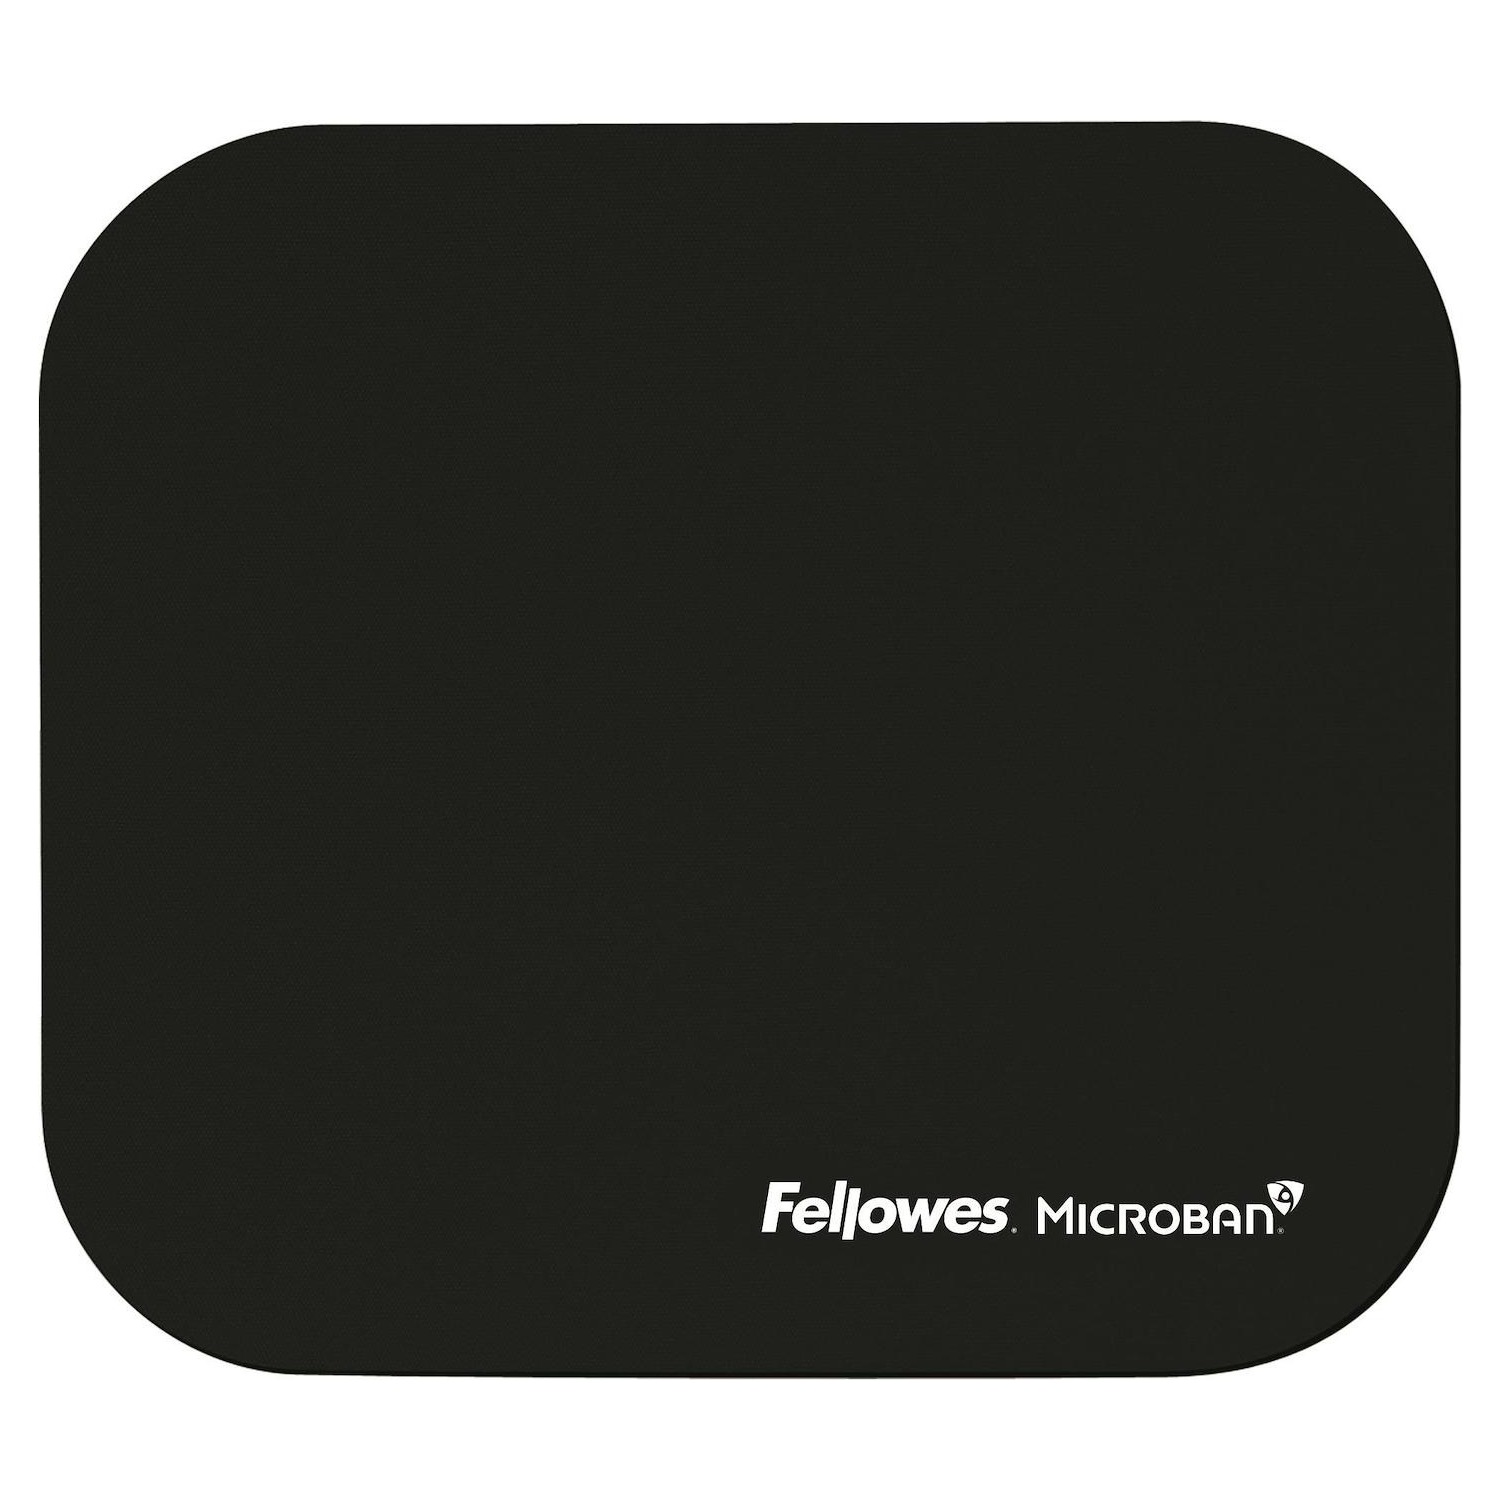 Immagine per Mouse pad Fellowes con microban nero da DIMOStore